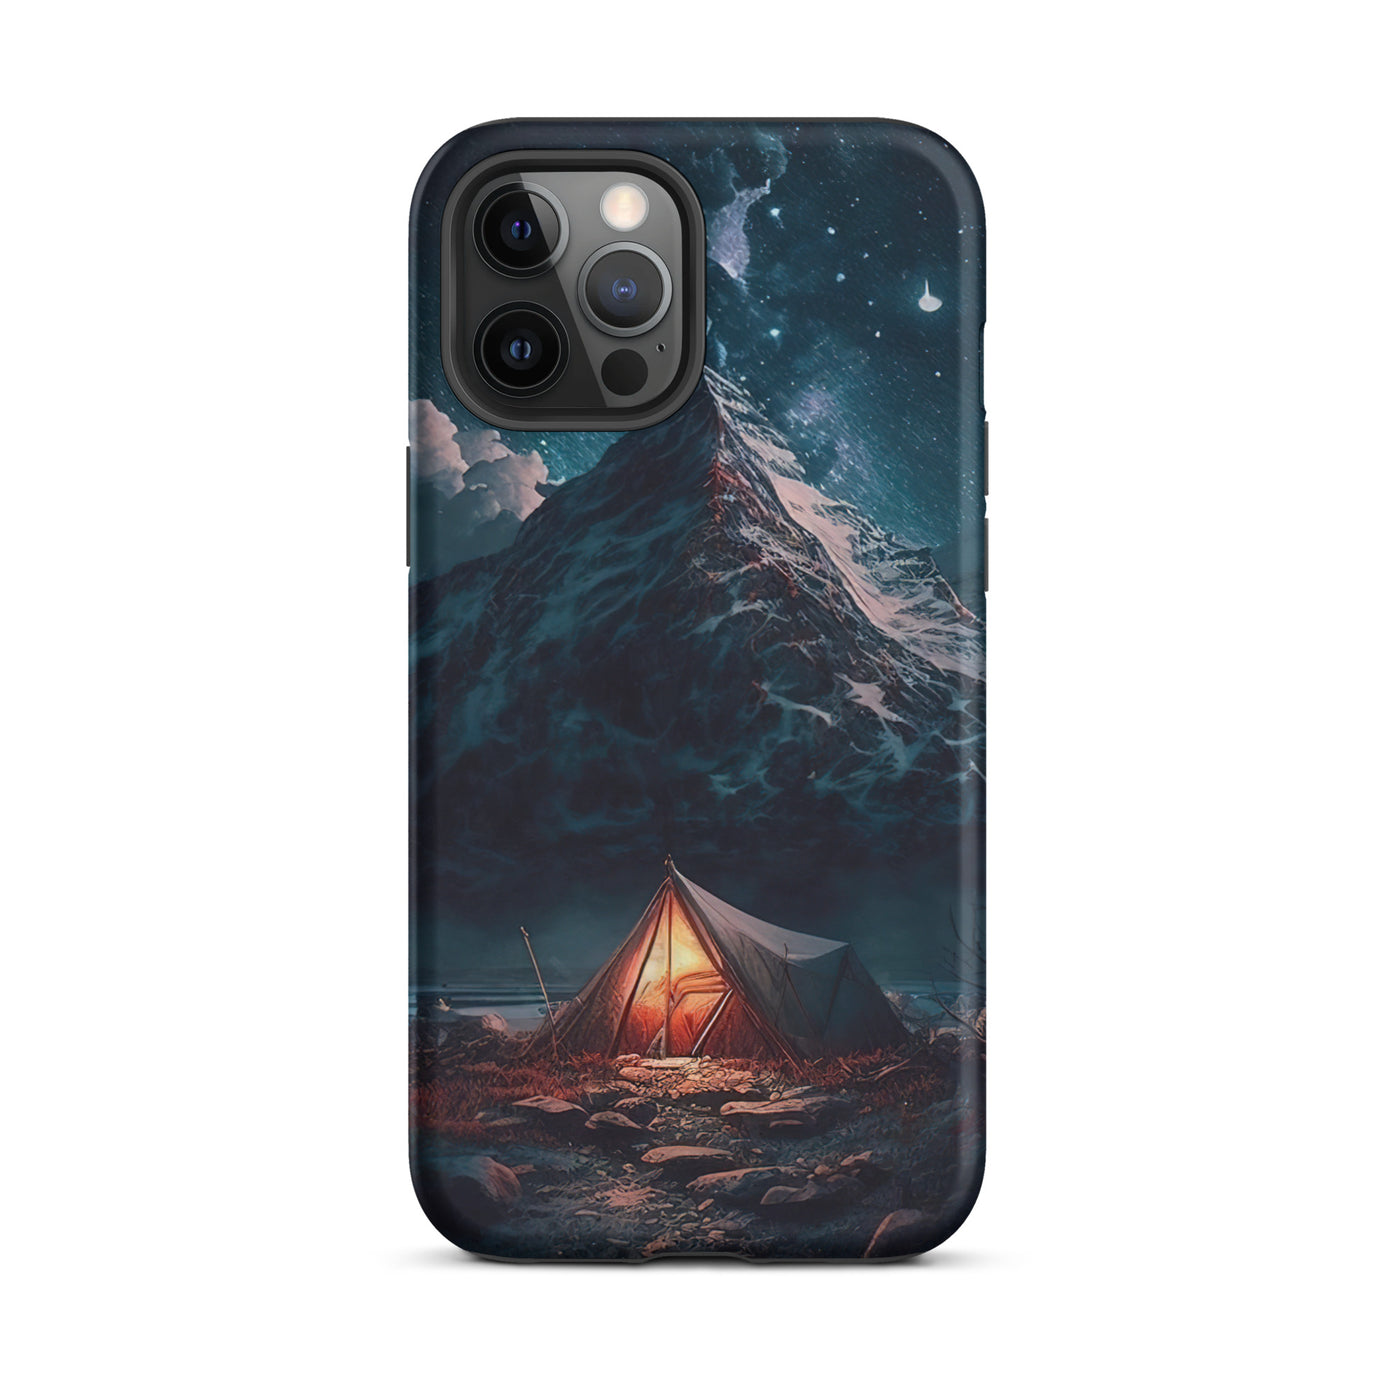 Zelt und Berg in der Nacht - Sterne am Himmel - Landschaftsmalerei - iPhone Schutzhülle (robust) camping xxx iPhone 12 Pro Max